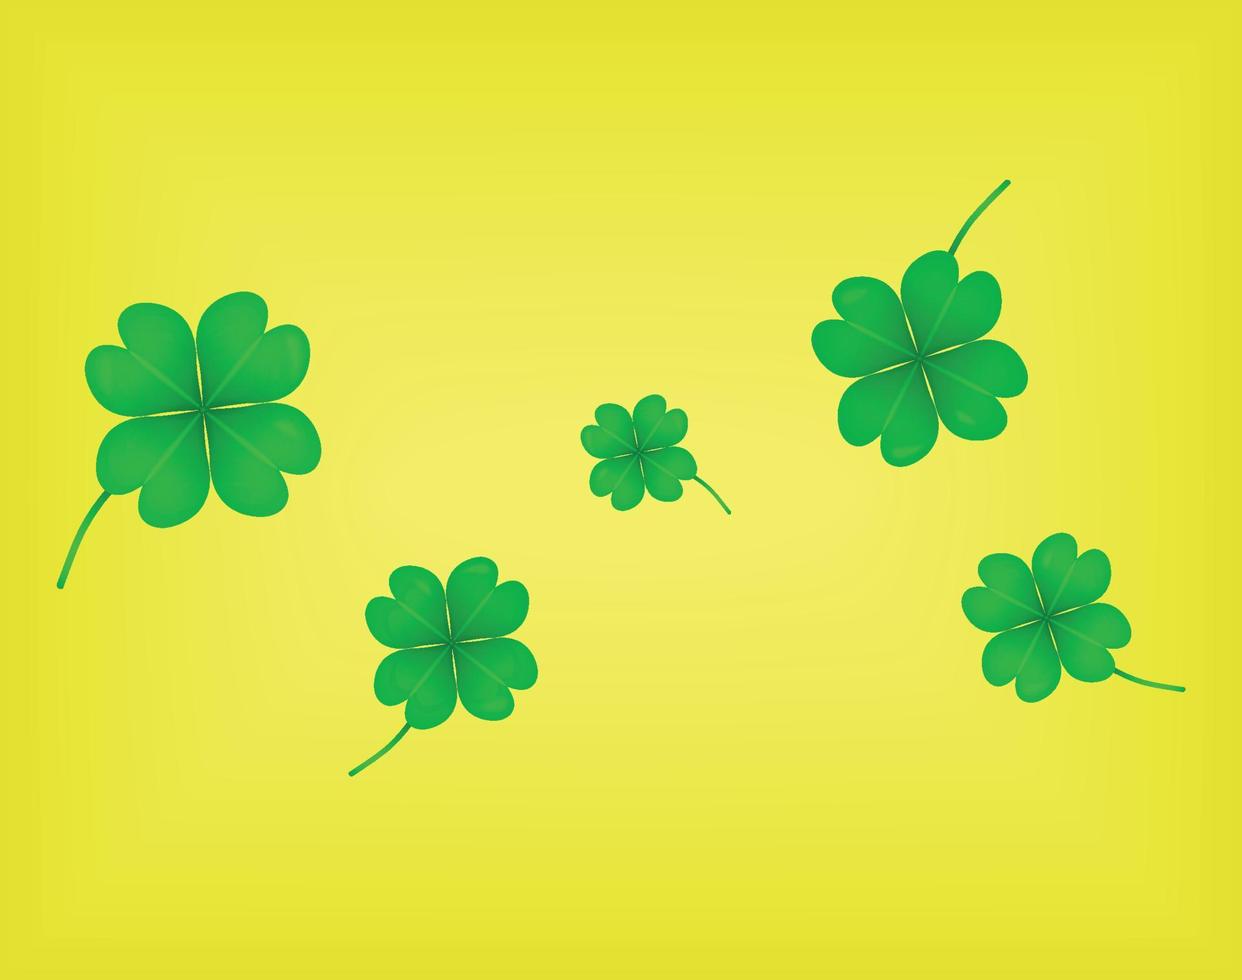 kleeblattblätter lokalisiert auf gelbem hintergrund. grünes irisches symbol viel glück. Vektor-Klee-Set für Saint Patrick's Day Feiertags-Grußkarten-Design vektor